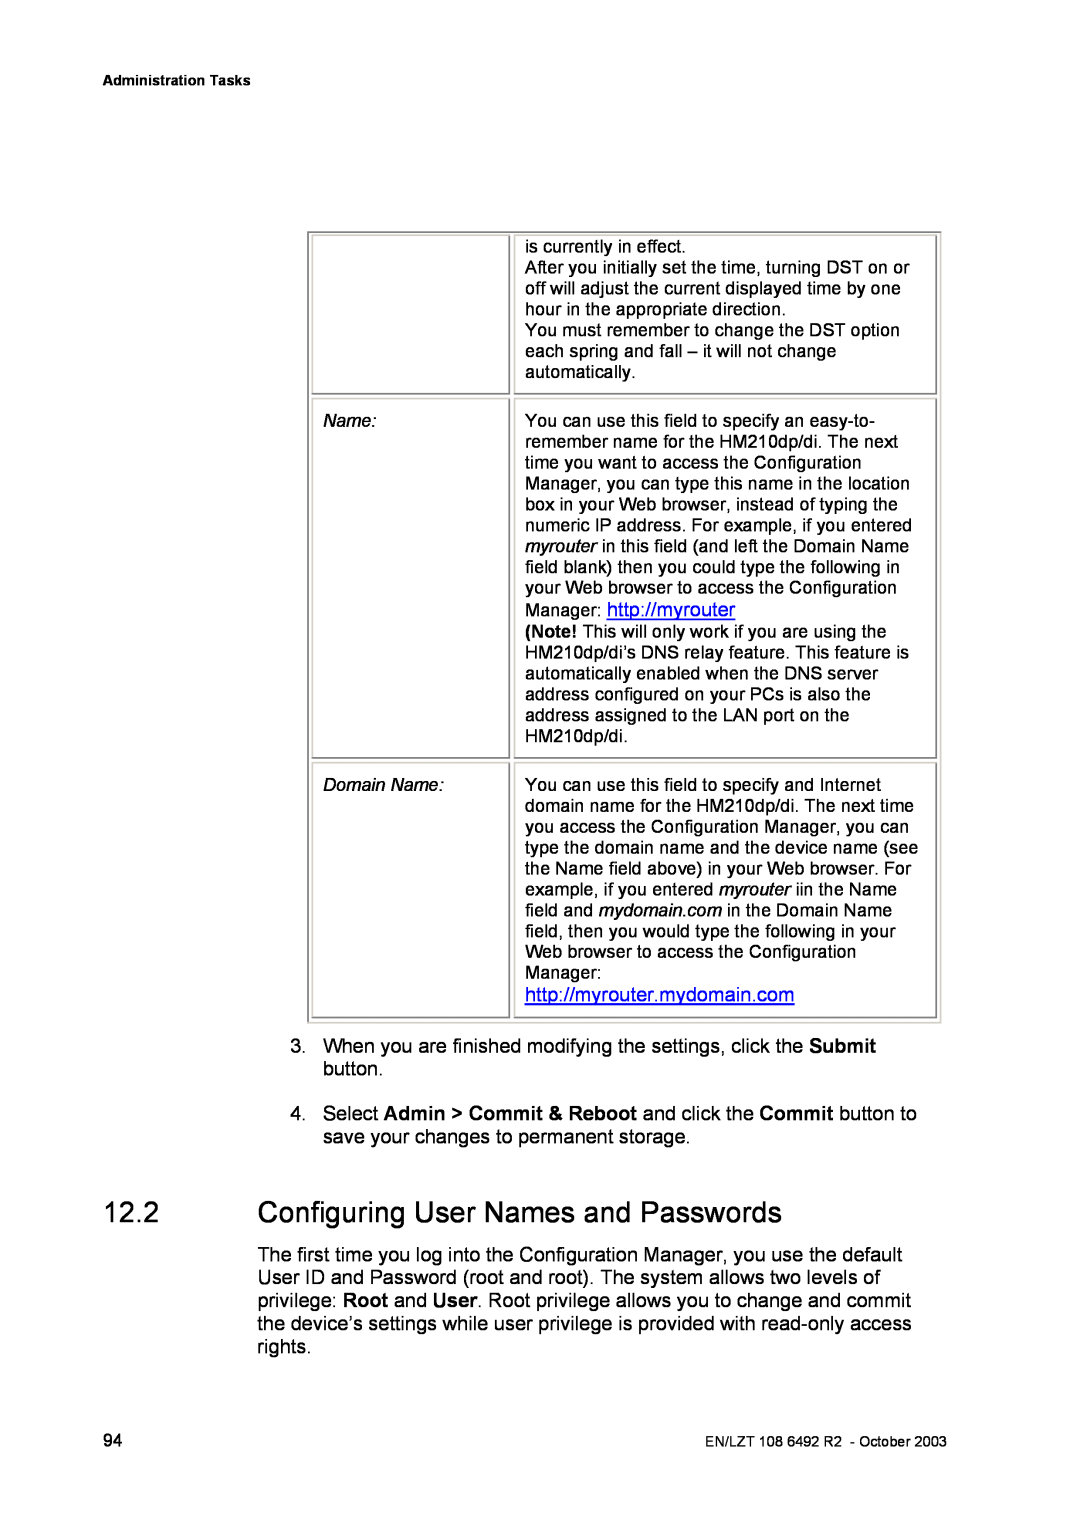 Garmin HM210DP/DI manual Configuring User Names and Passwords, Manager http//myrouter, http//myrouter.mydomain.com 